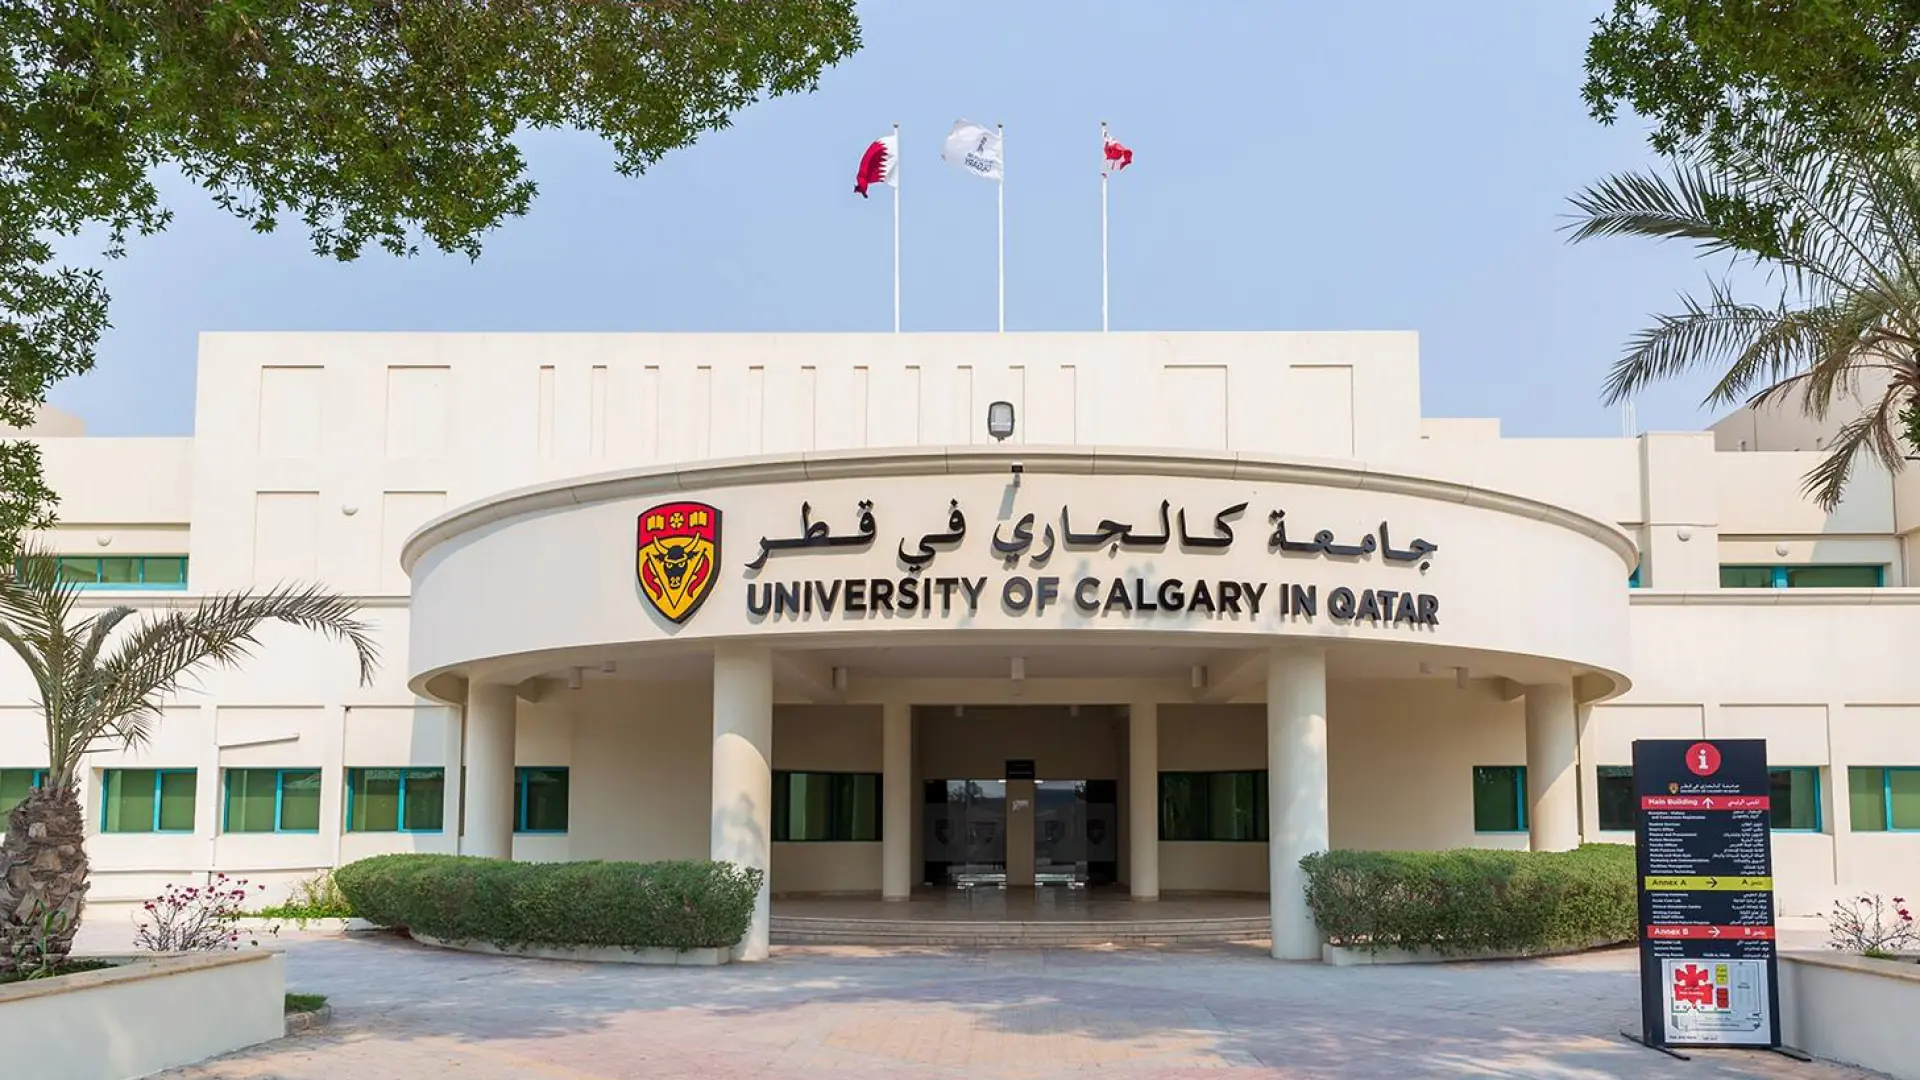 Qatar Universitetida bakalavr bosqichini o‘qish uchun to‘liq moliyalashtiradigan Qatar University Scholarship grant dasturi